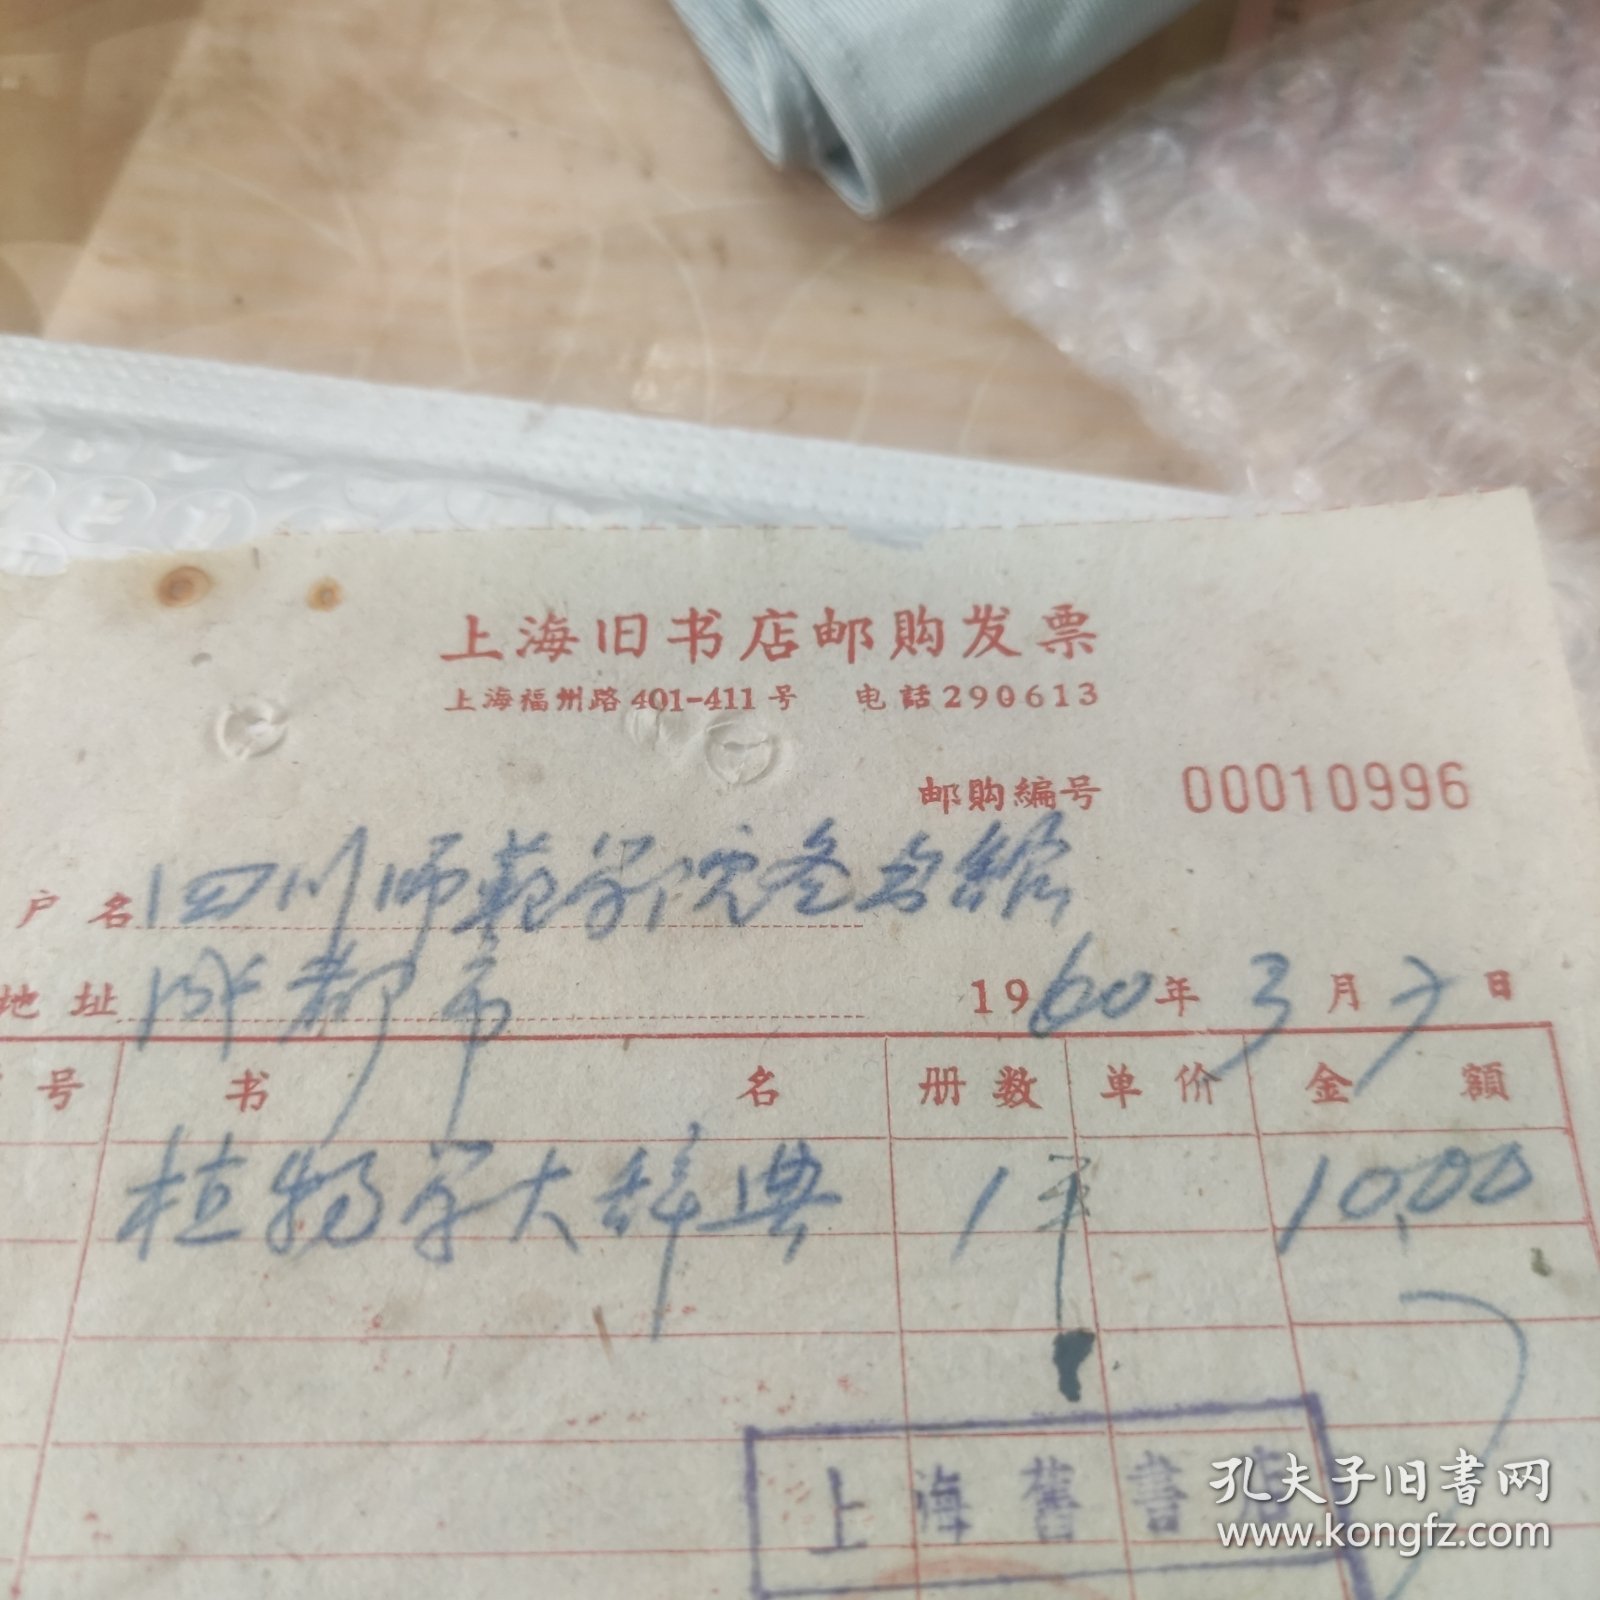 上海旧书店邮购发票